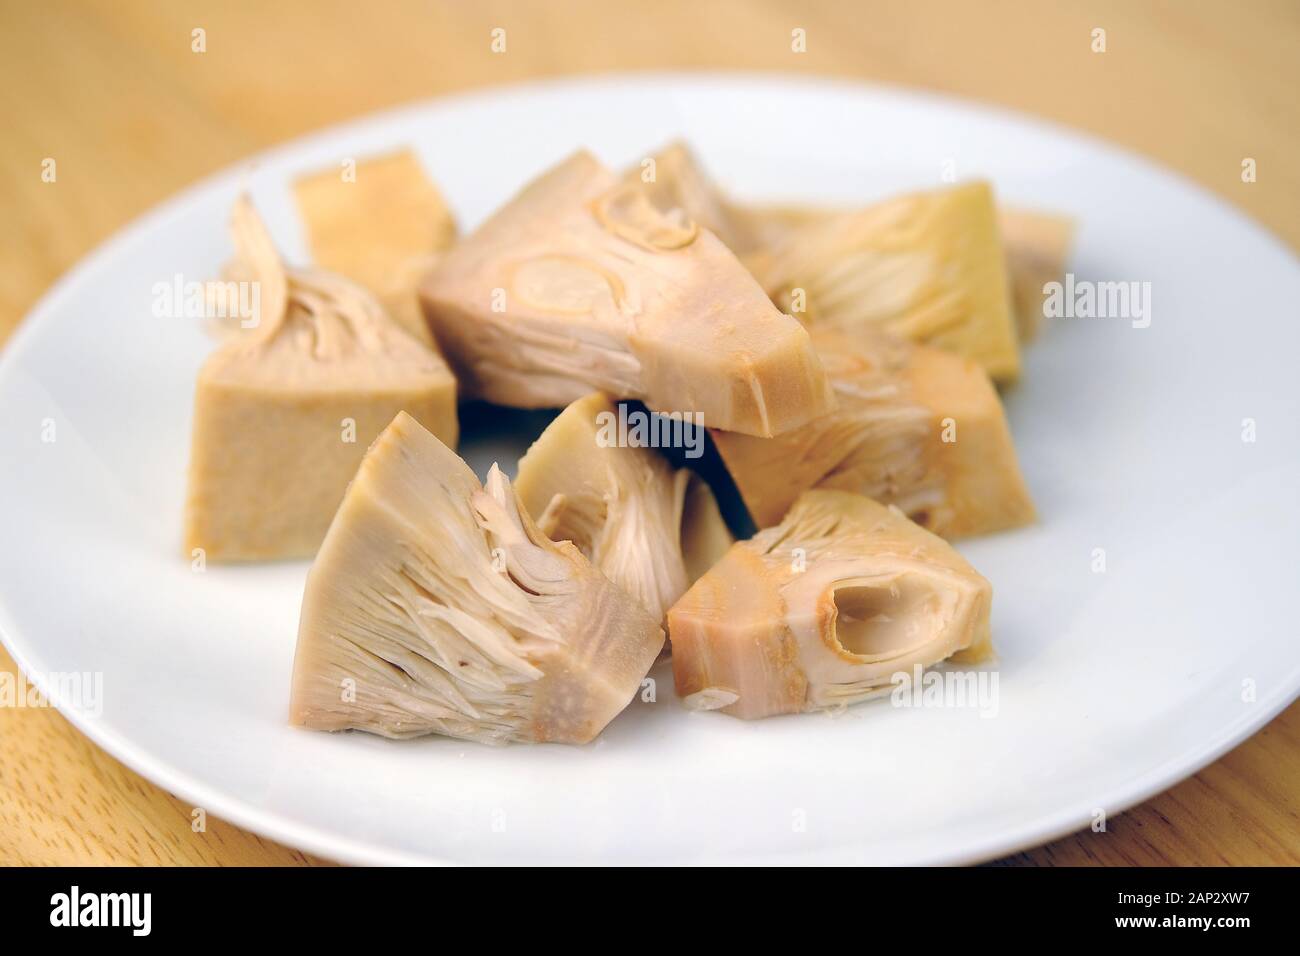 Trozos tiernos jóvenes de Jackfruit enlatados en el plato. Sustituto saludable de la carne vegana y es una de las tendencias alimentarias debido a su textura como la carne. Foto de stock